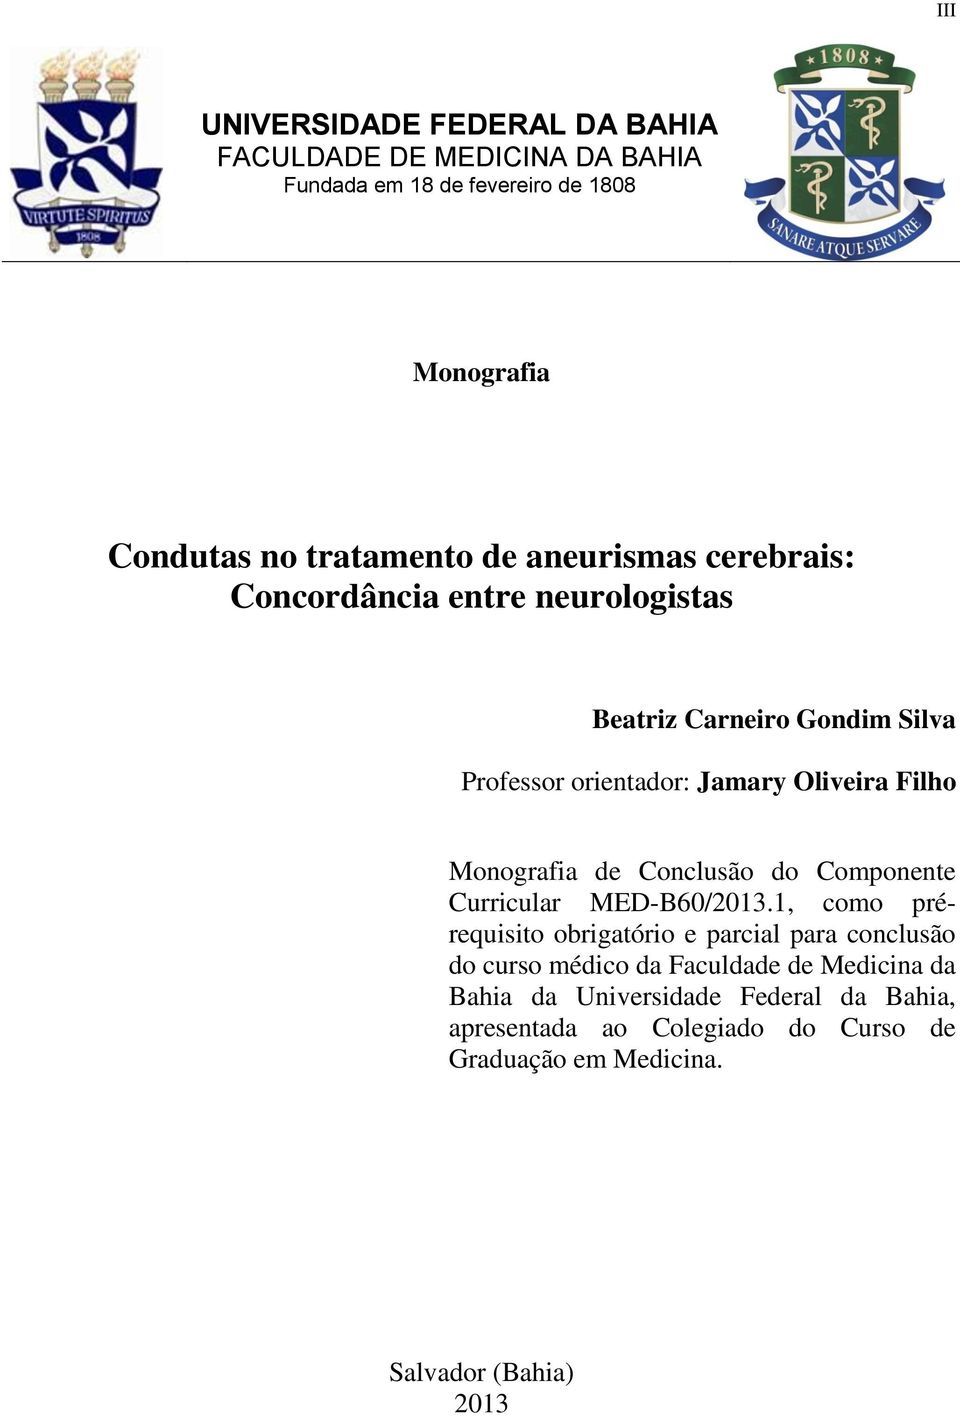 Monografia de Conclusão do Componente Curricular MED-B60/2013.